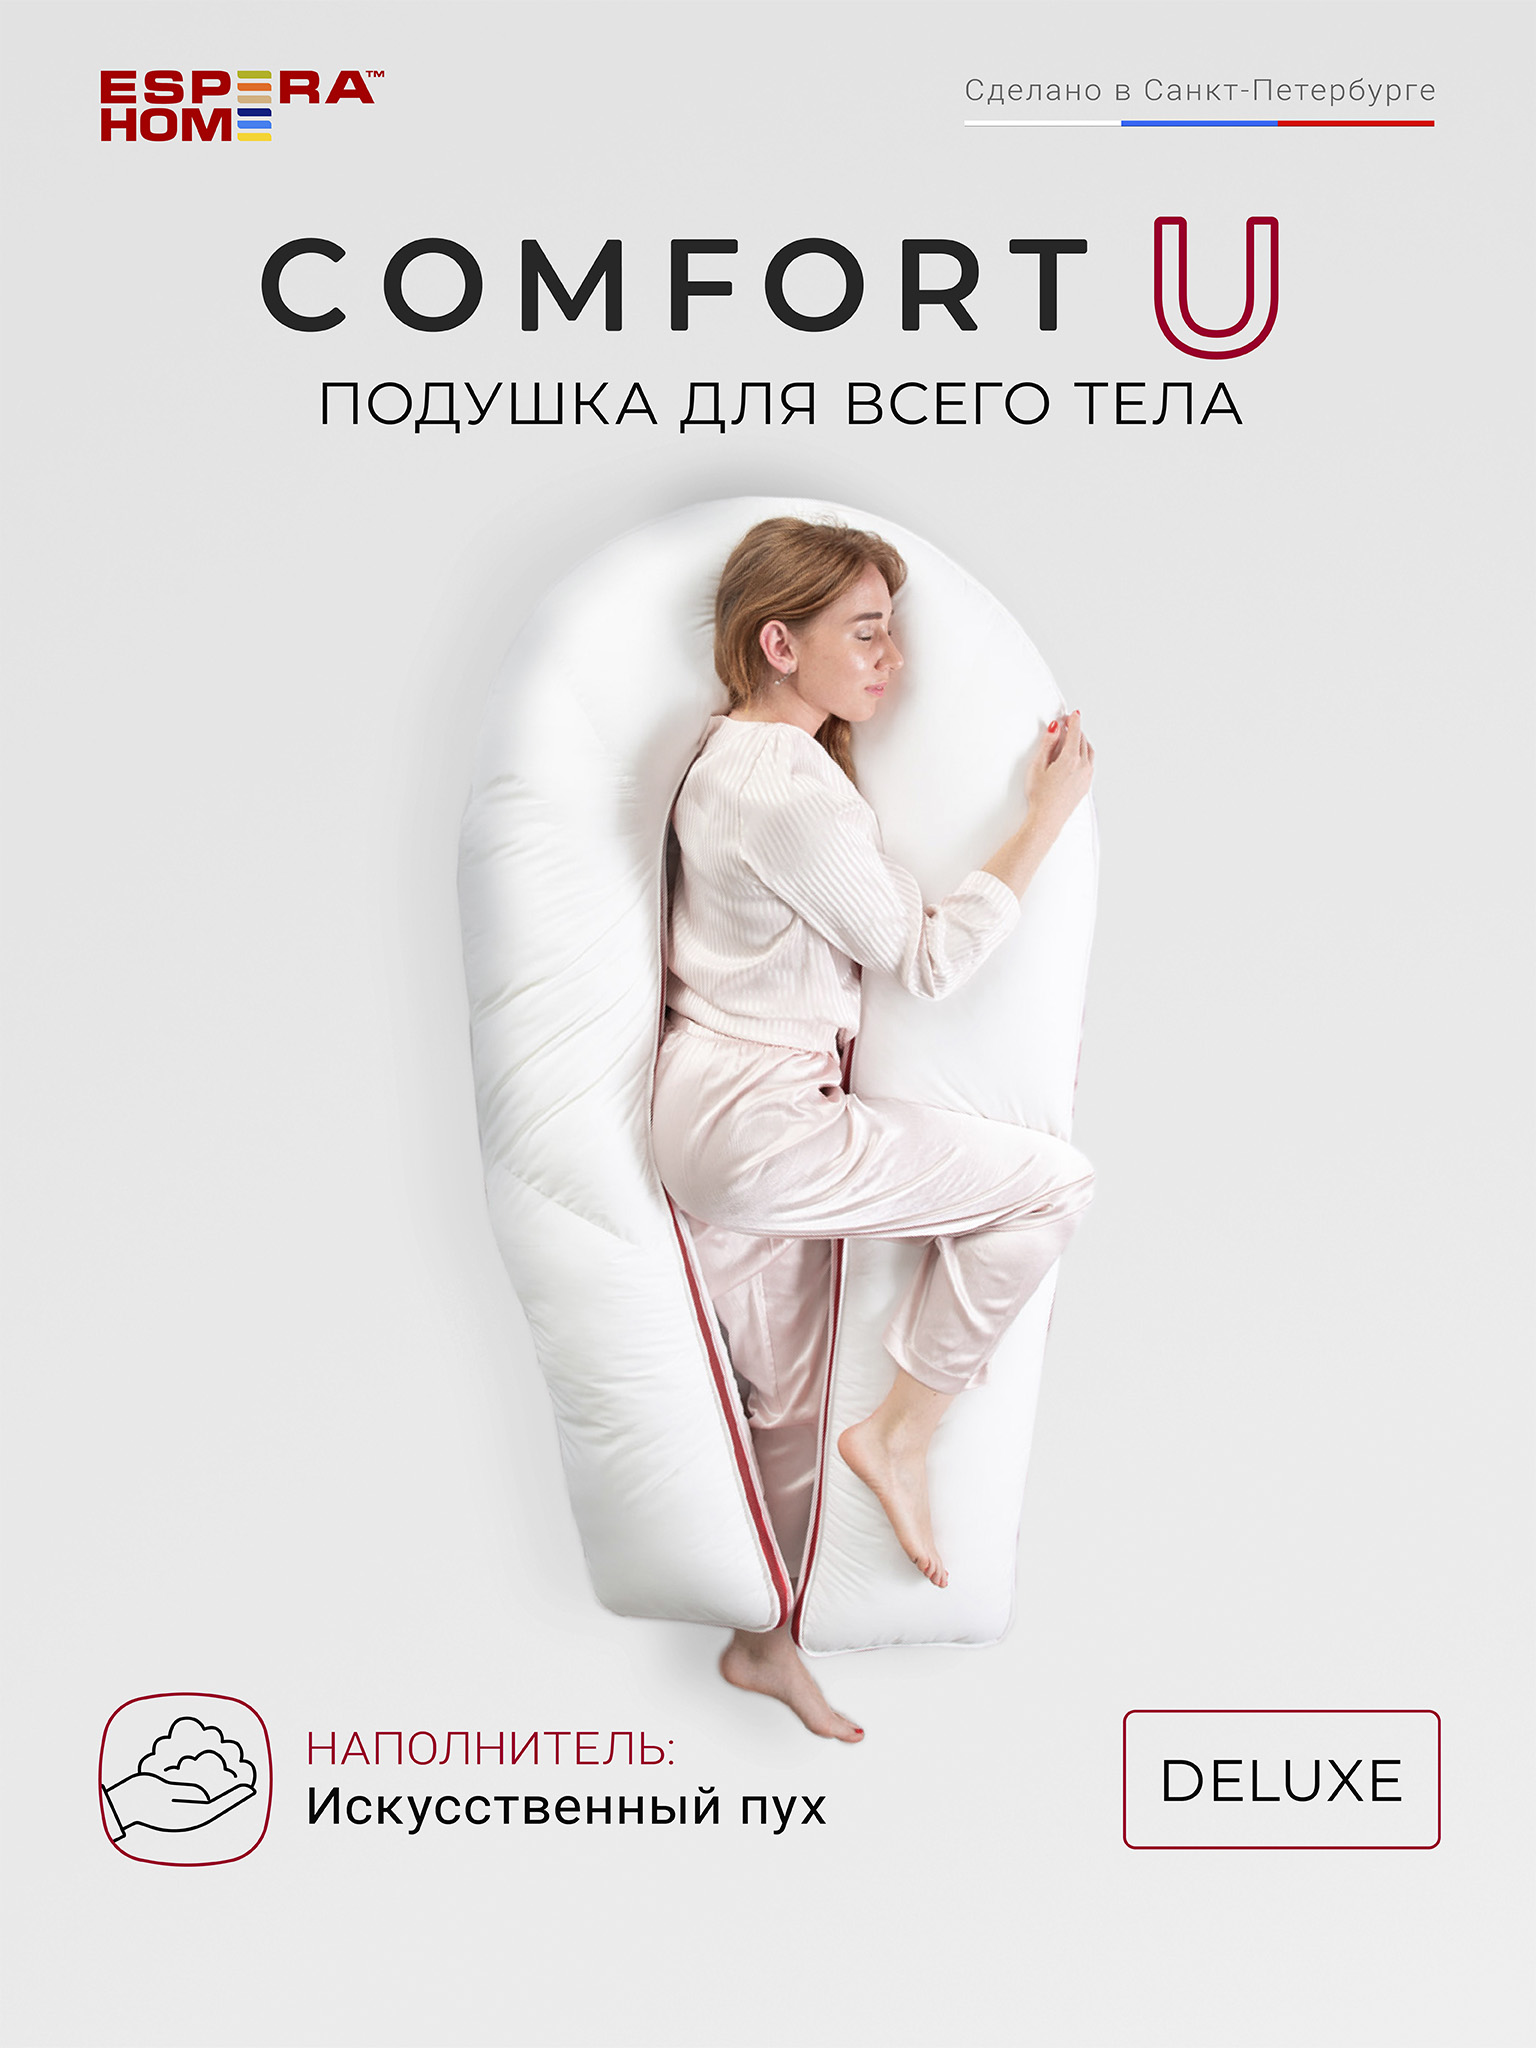       Comfort U Deluxe /     5-BLOC,  165x90 